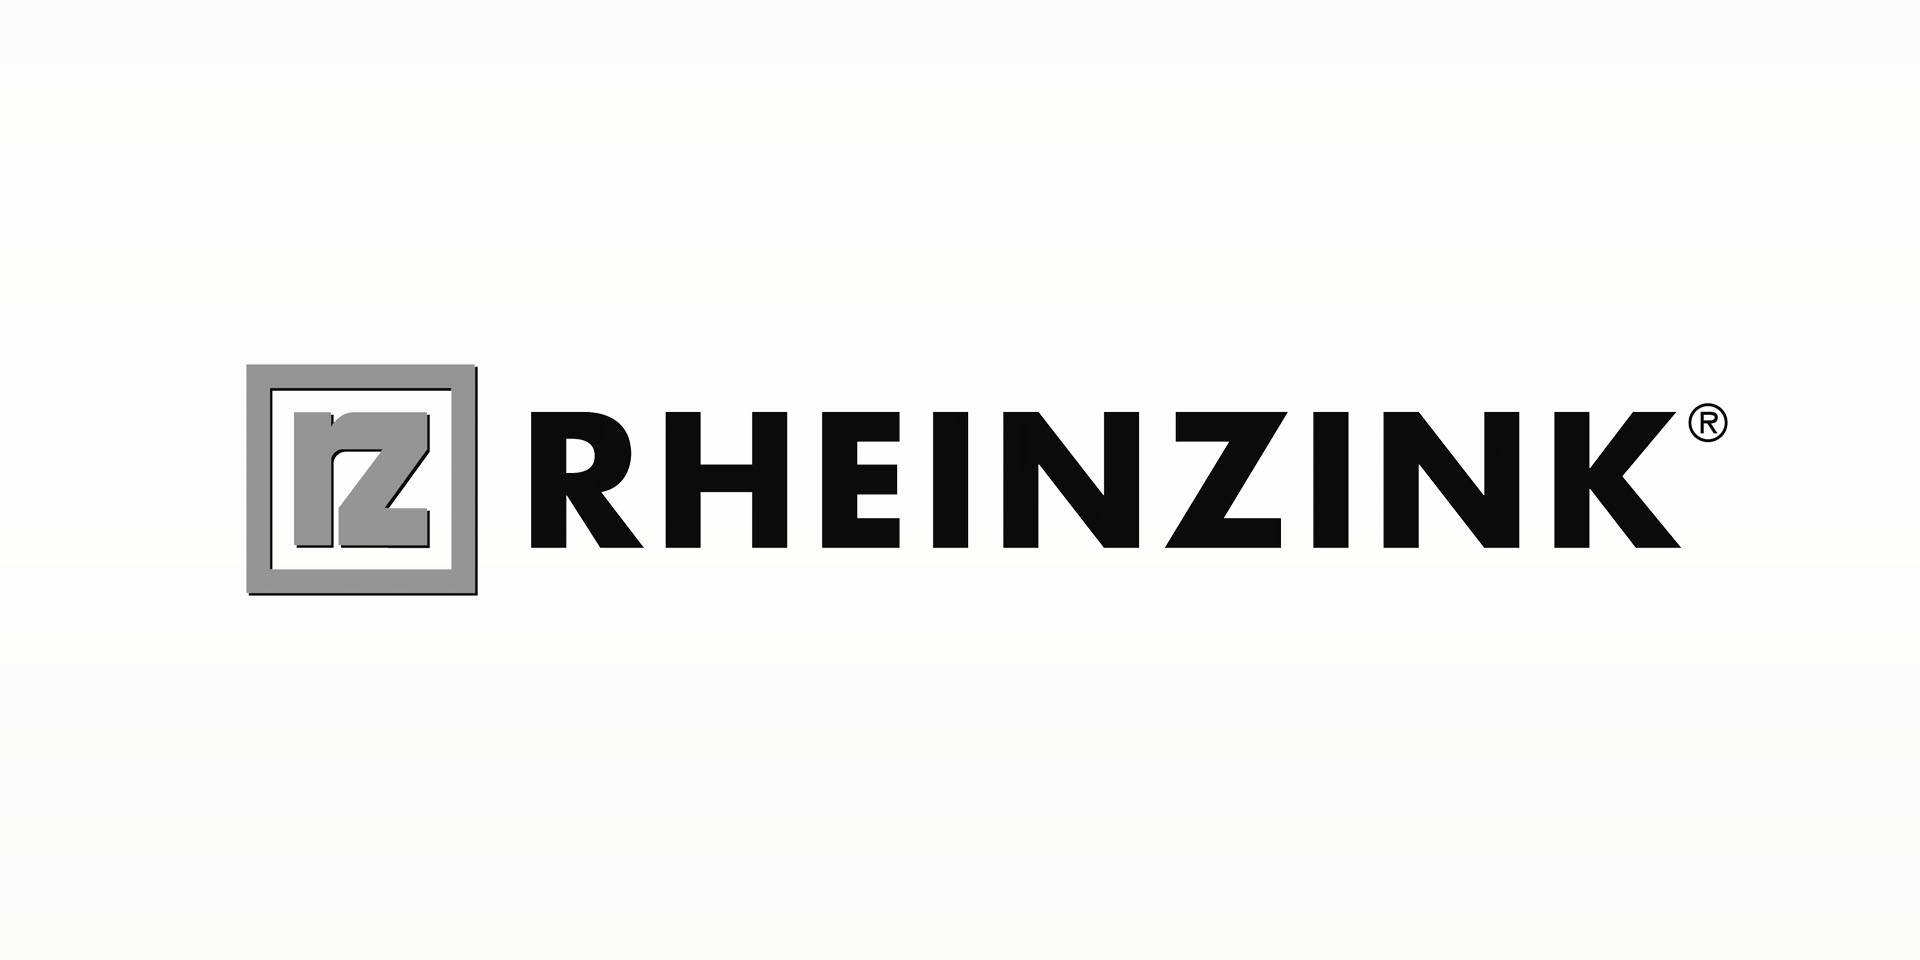 RHEINZINK est synonyme de zinc-titane de qualité.